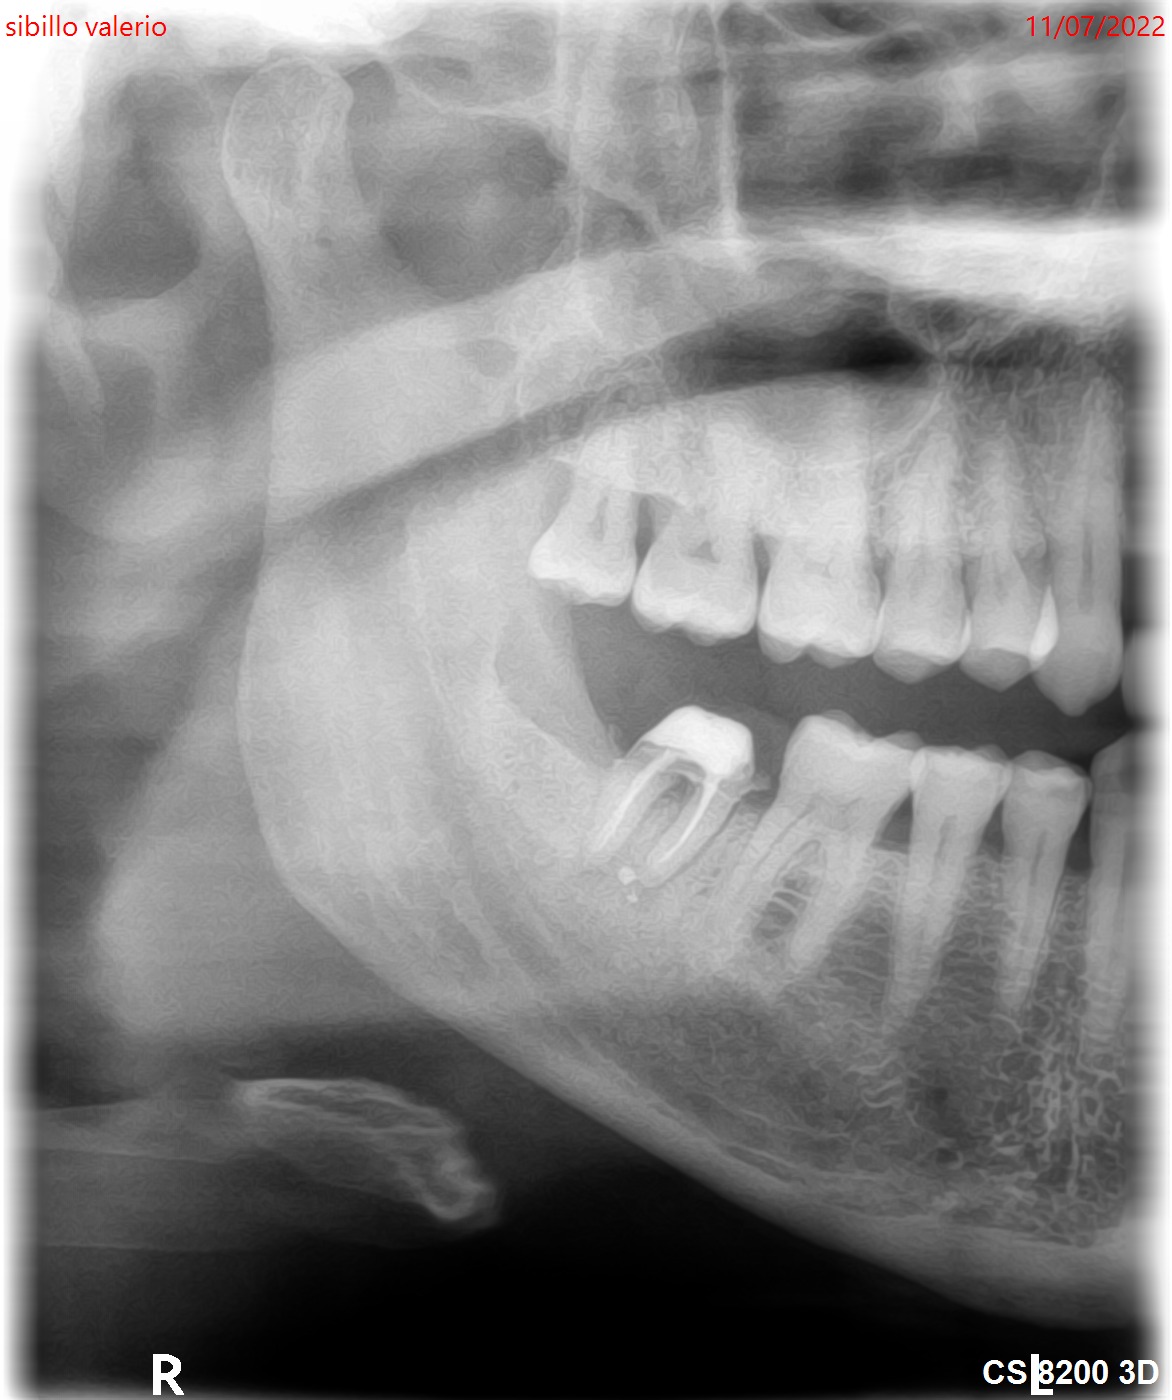 Il dente 47 ha una frattura radicolare?